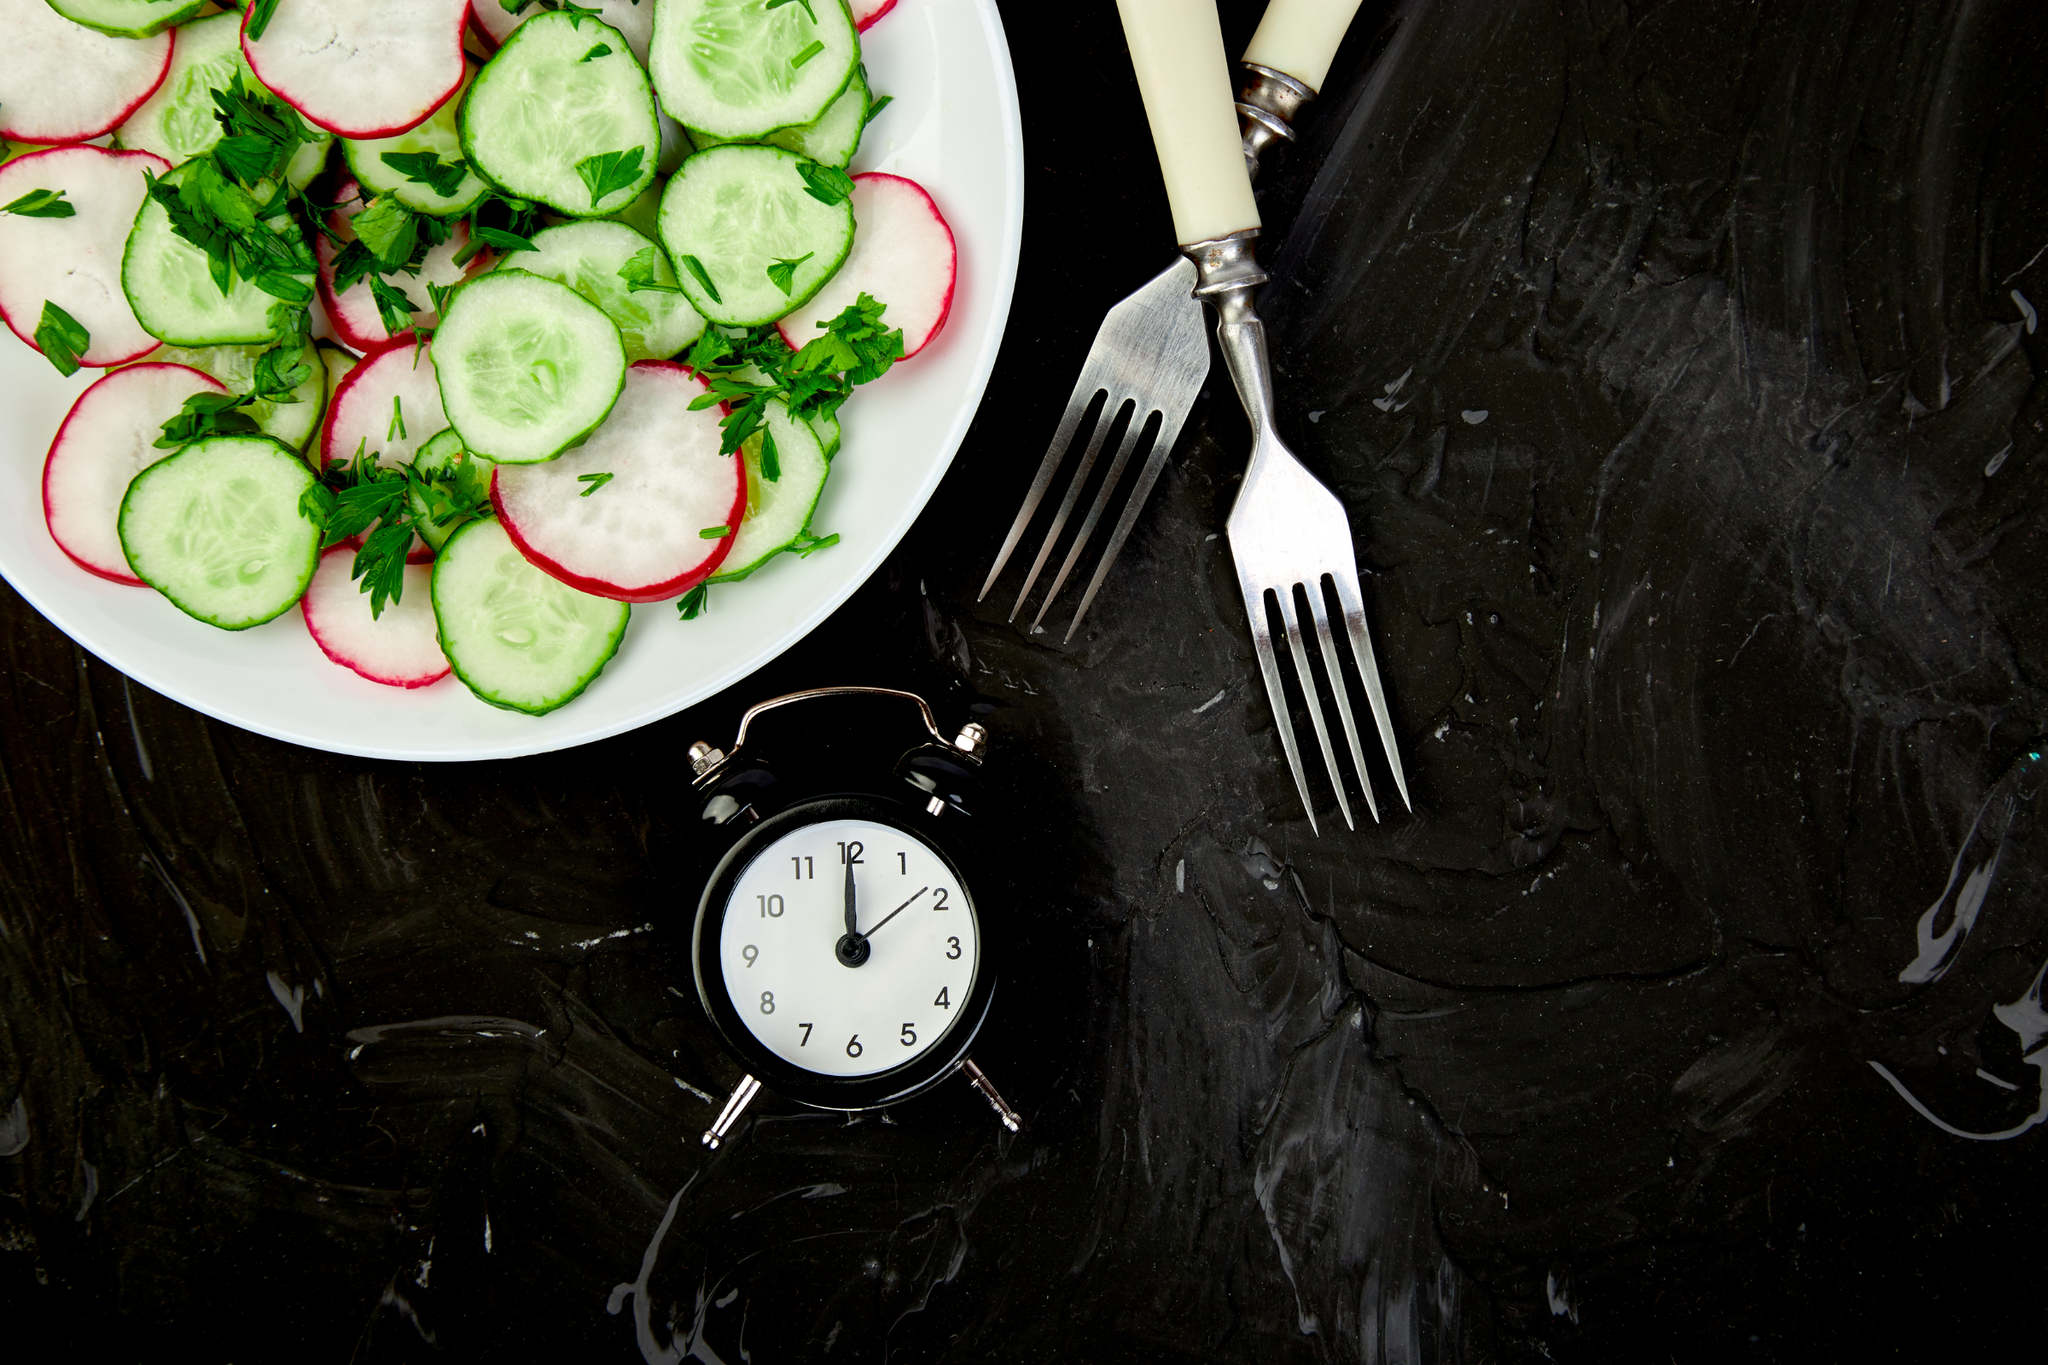 Assiette de radis et concombre avec un chronomètre à côté et des couverts pour montrer qu'il y a une heure de la journée pour chaque aliment